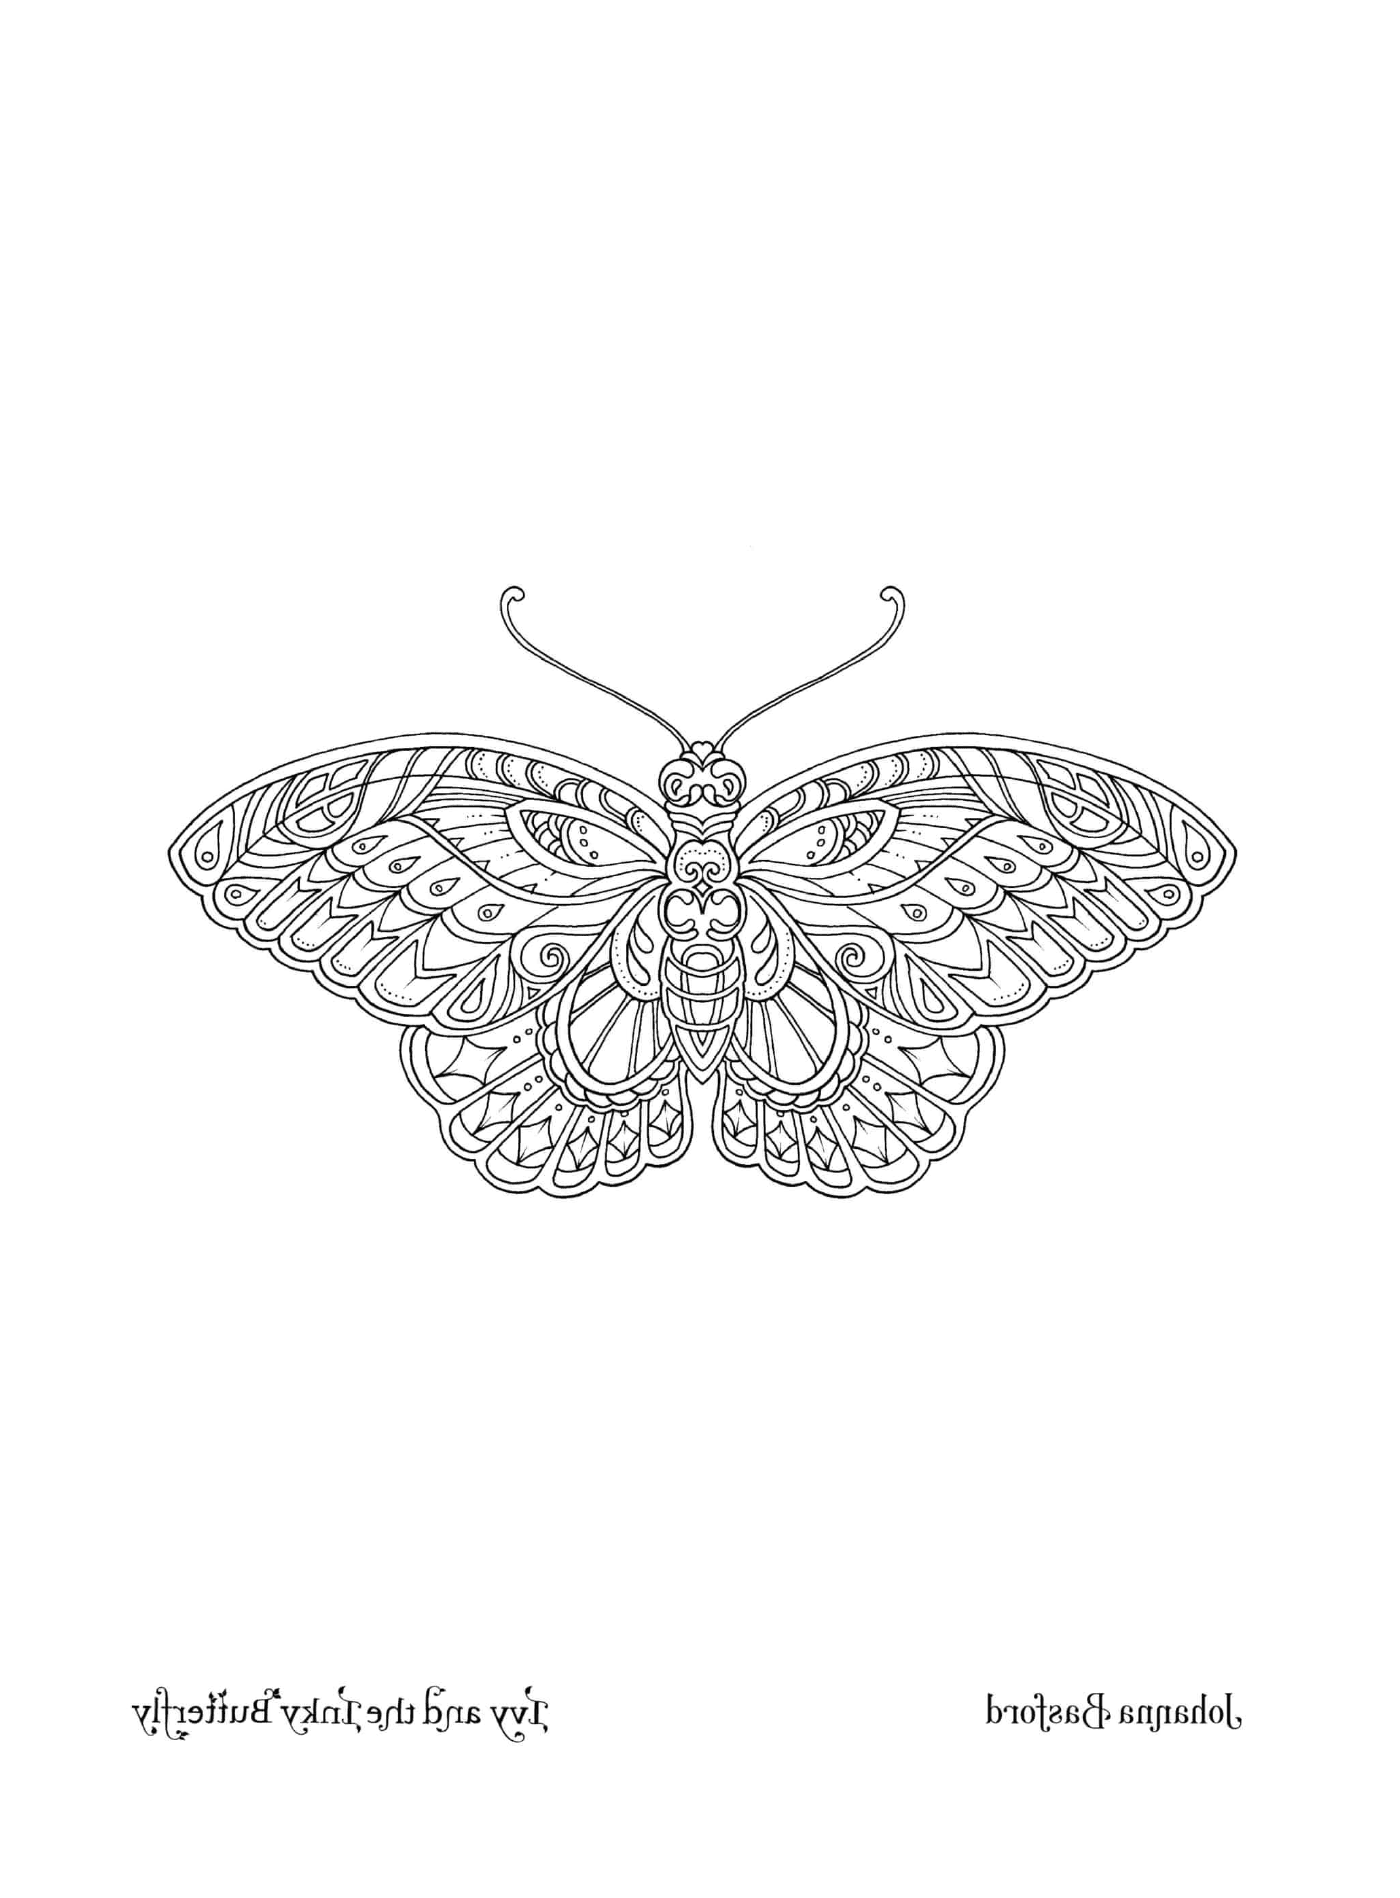   Un papillon majestueux 